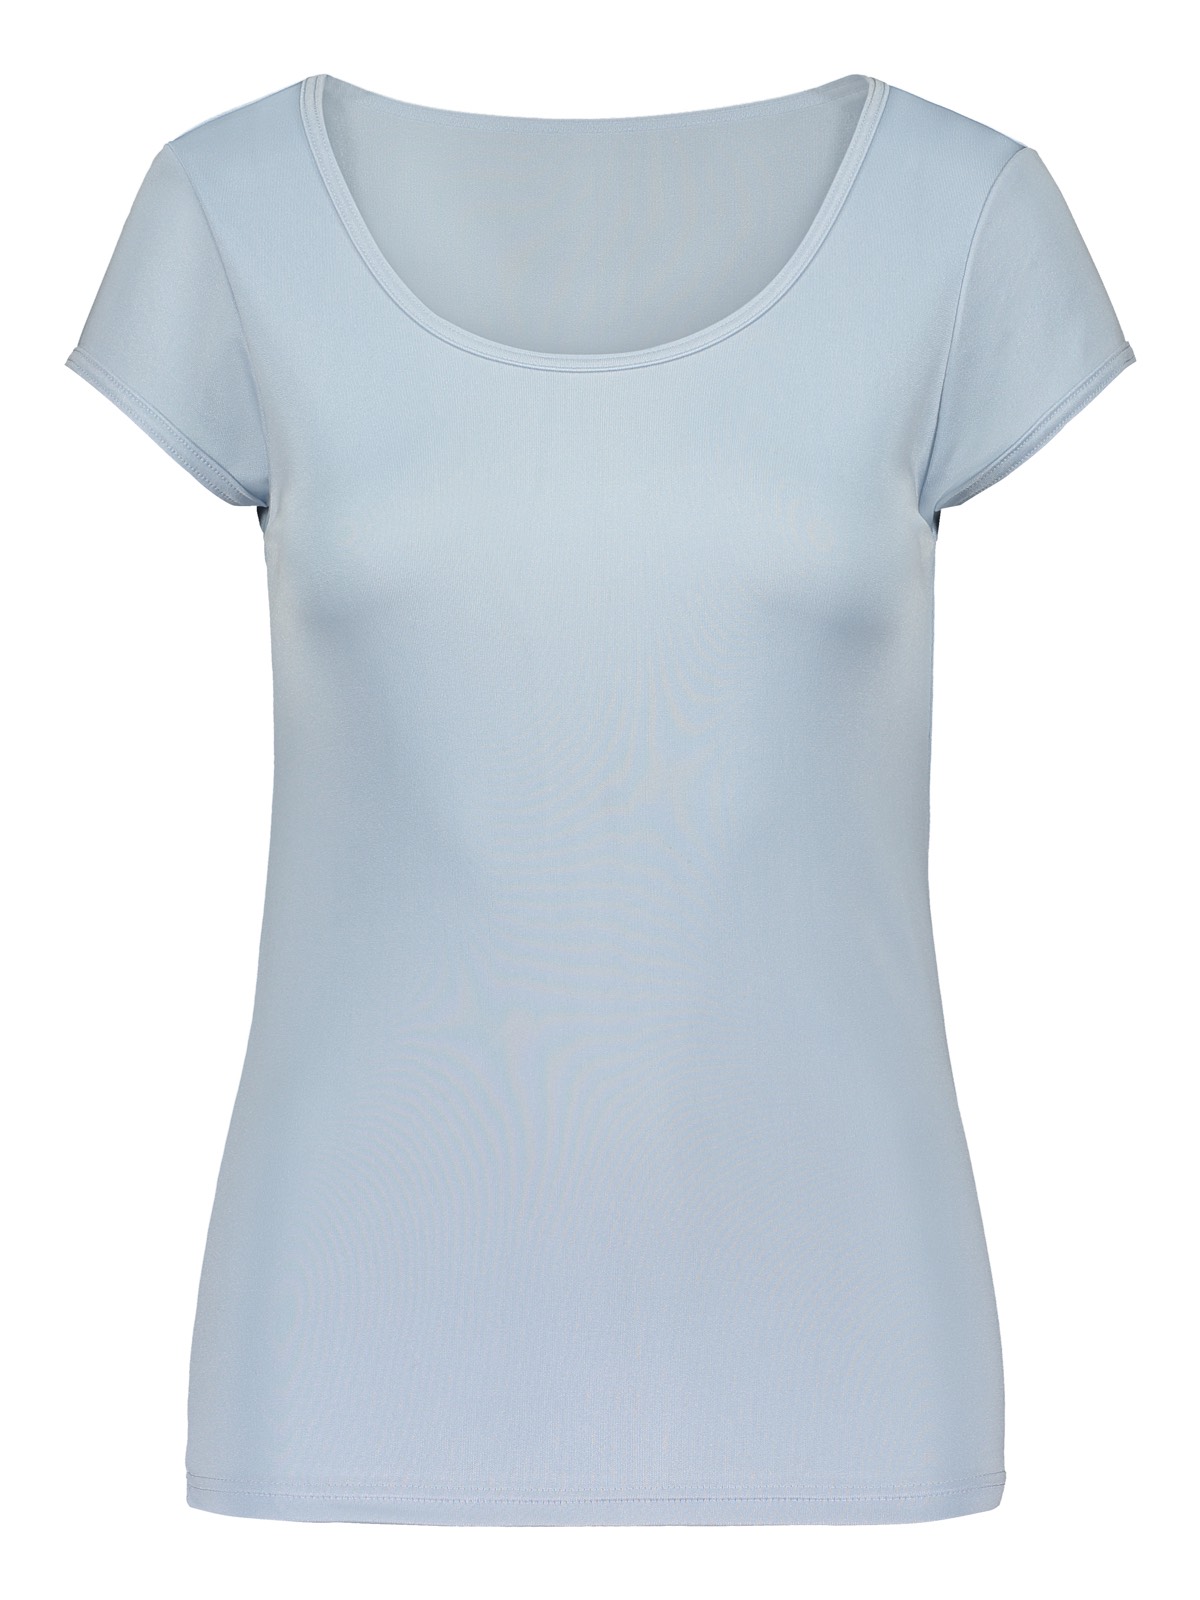 OUTLET Women's short-sleeved top, silk